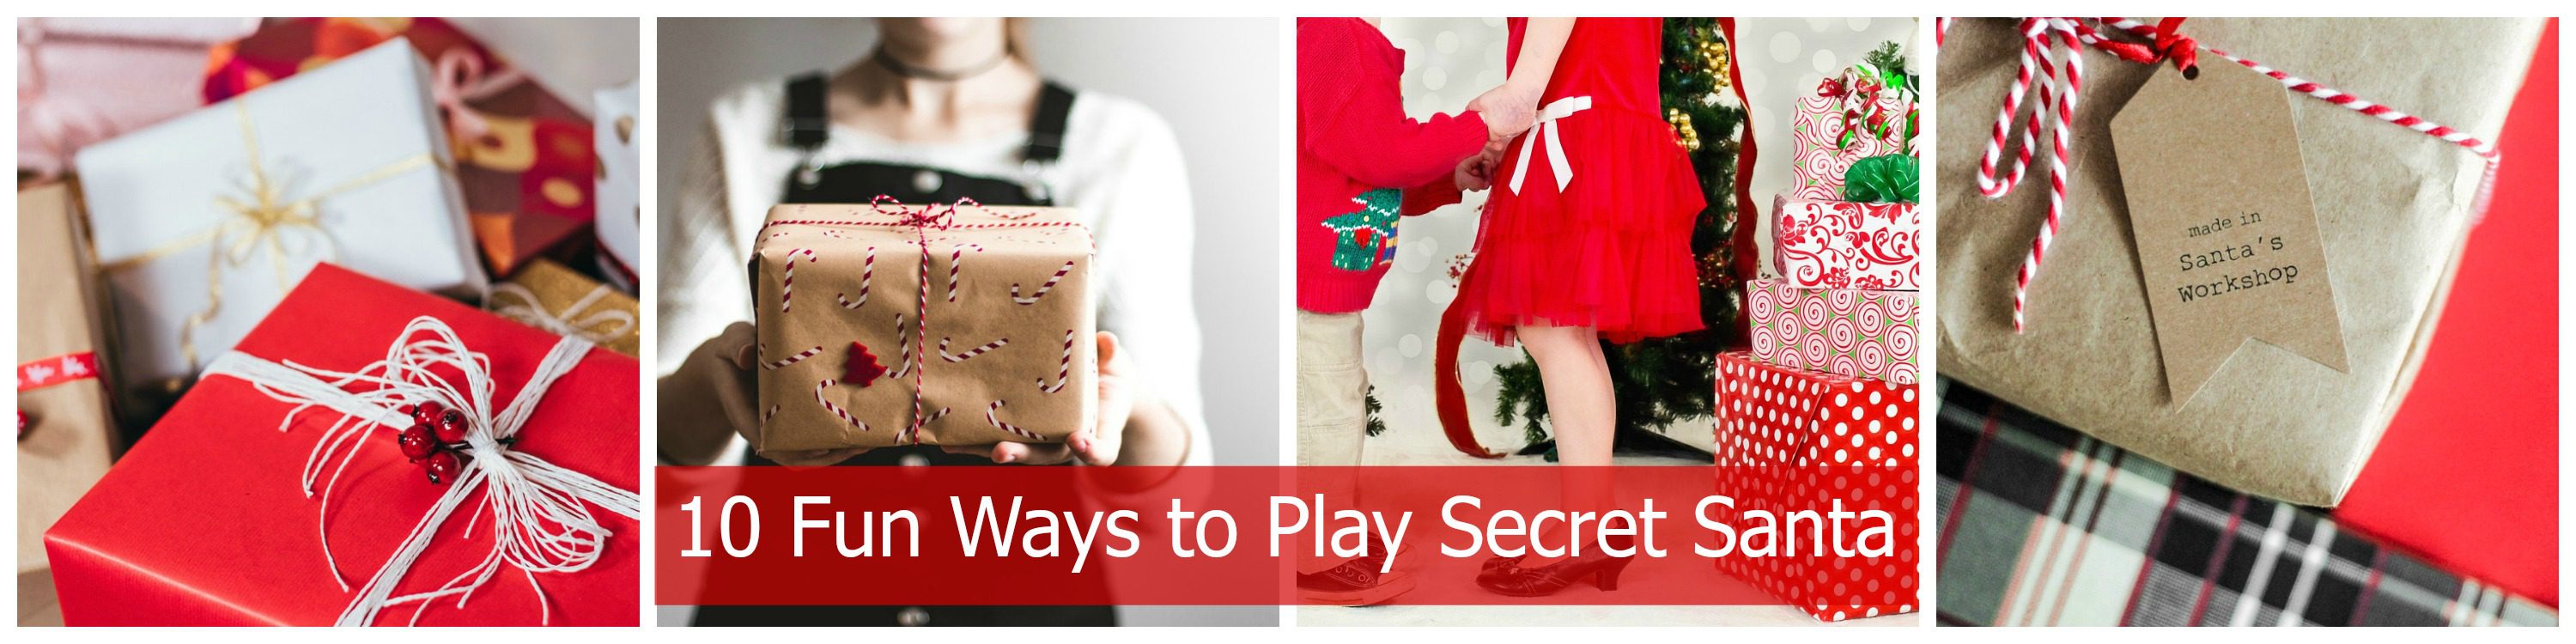 Secret Santa Gifts | creative gift ideas & news at catching fireflies